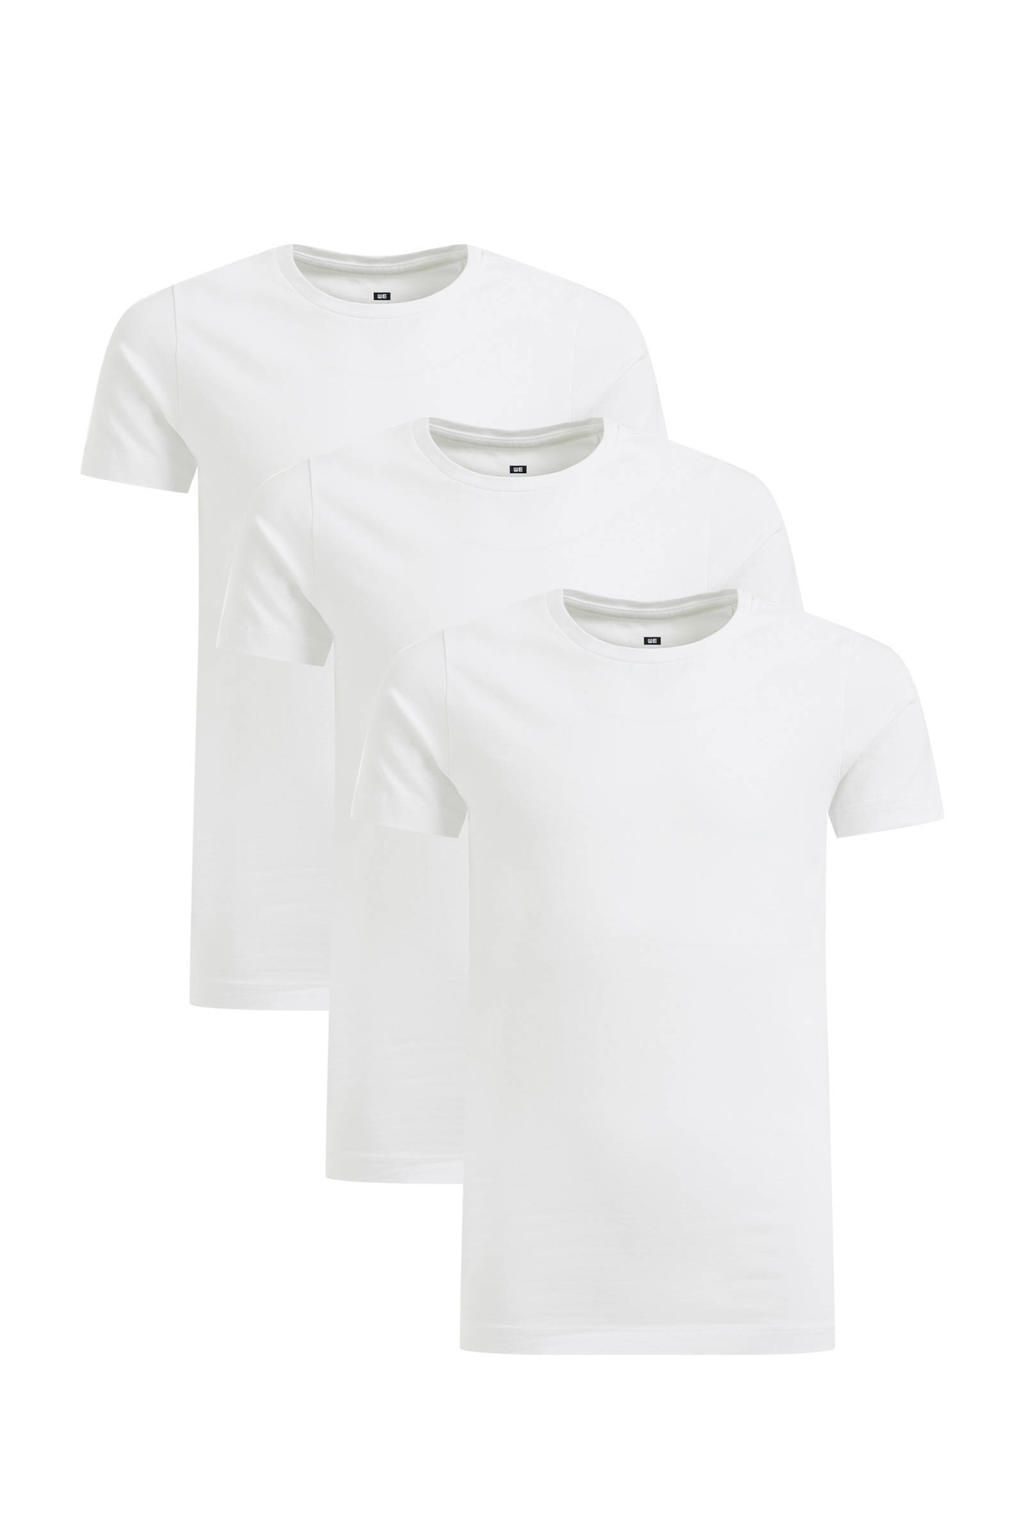 Set van 3 witte jongens WE Fashion T-shirt van stretchkatoen met korte mouwen en ronde hals